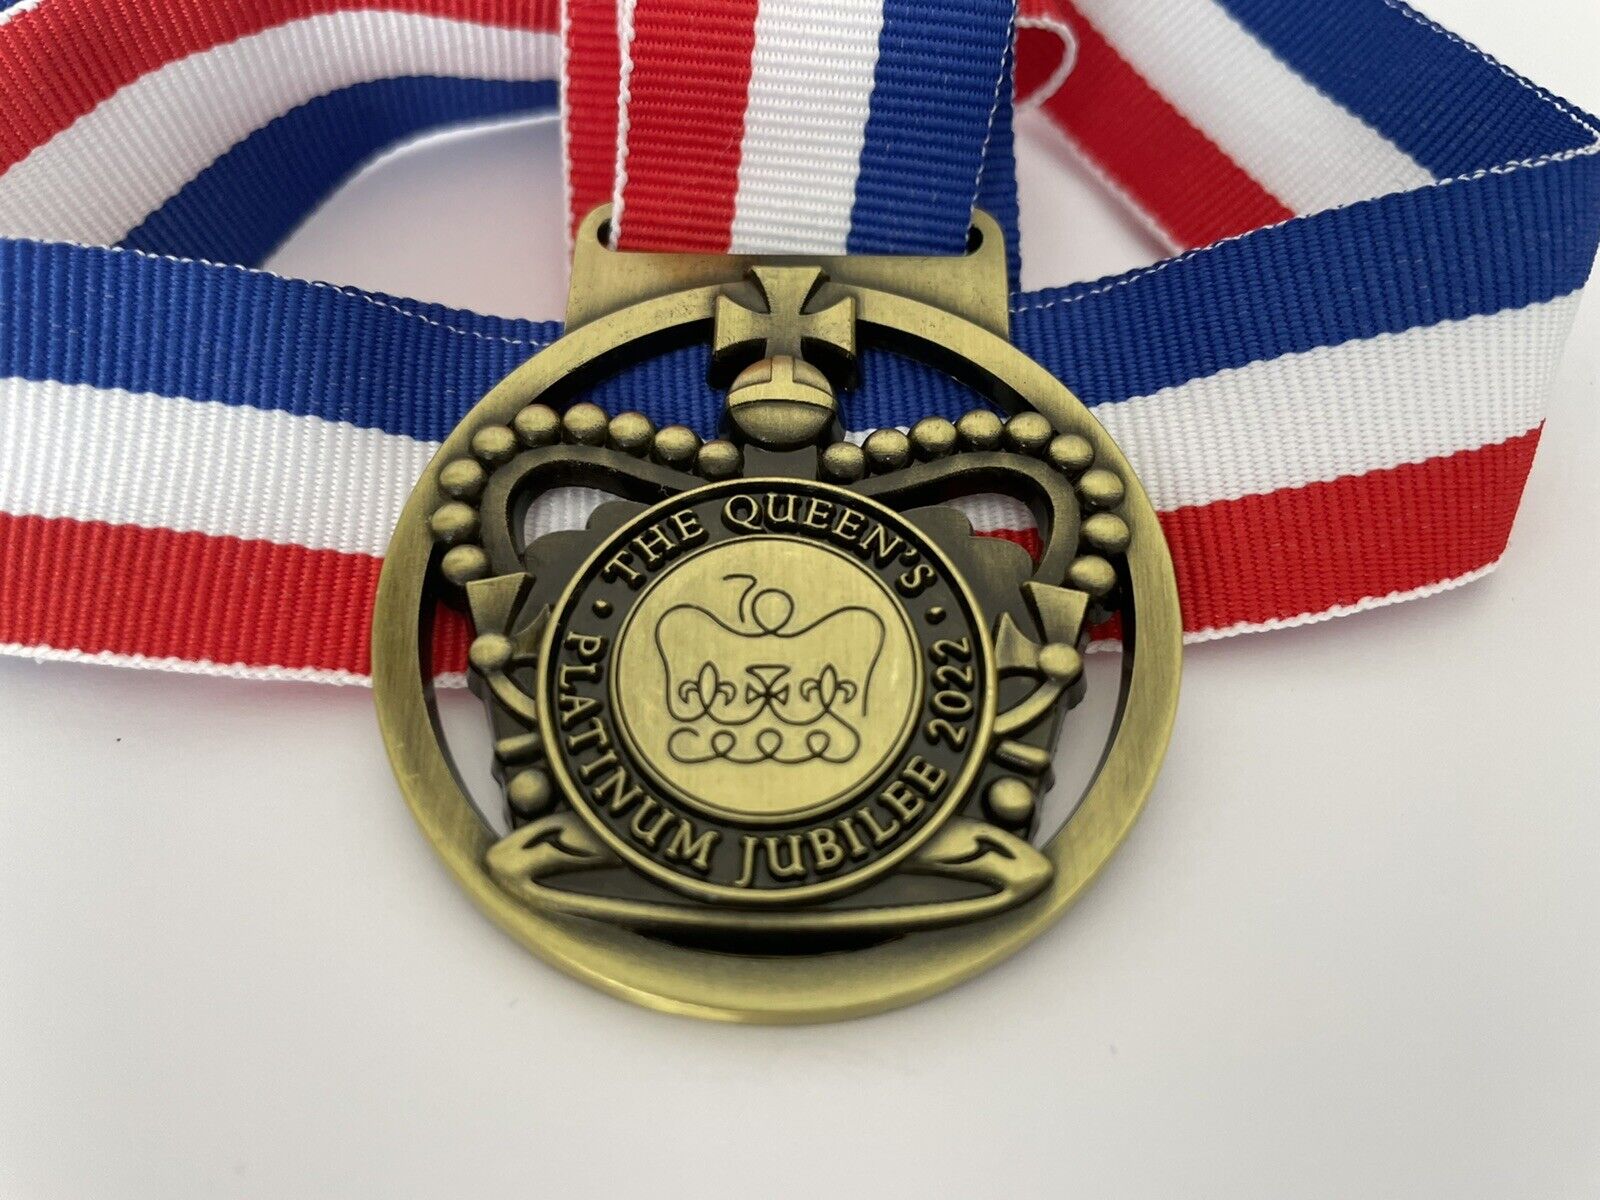 Queens Jubilee Crown Medal - Running Event, Street Party, School, Kids, Keepsake